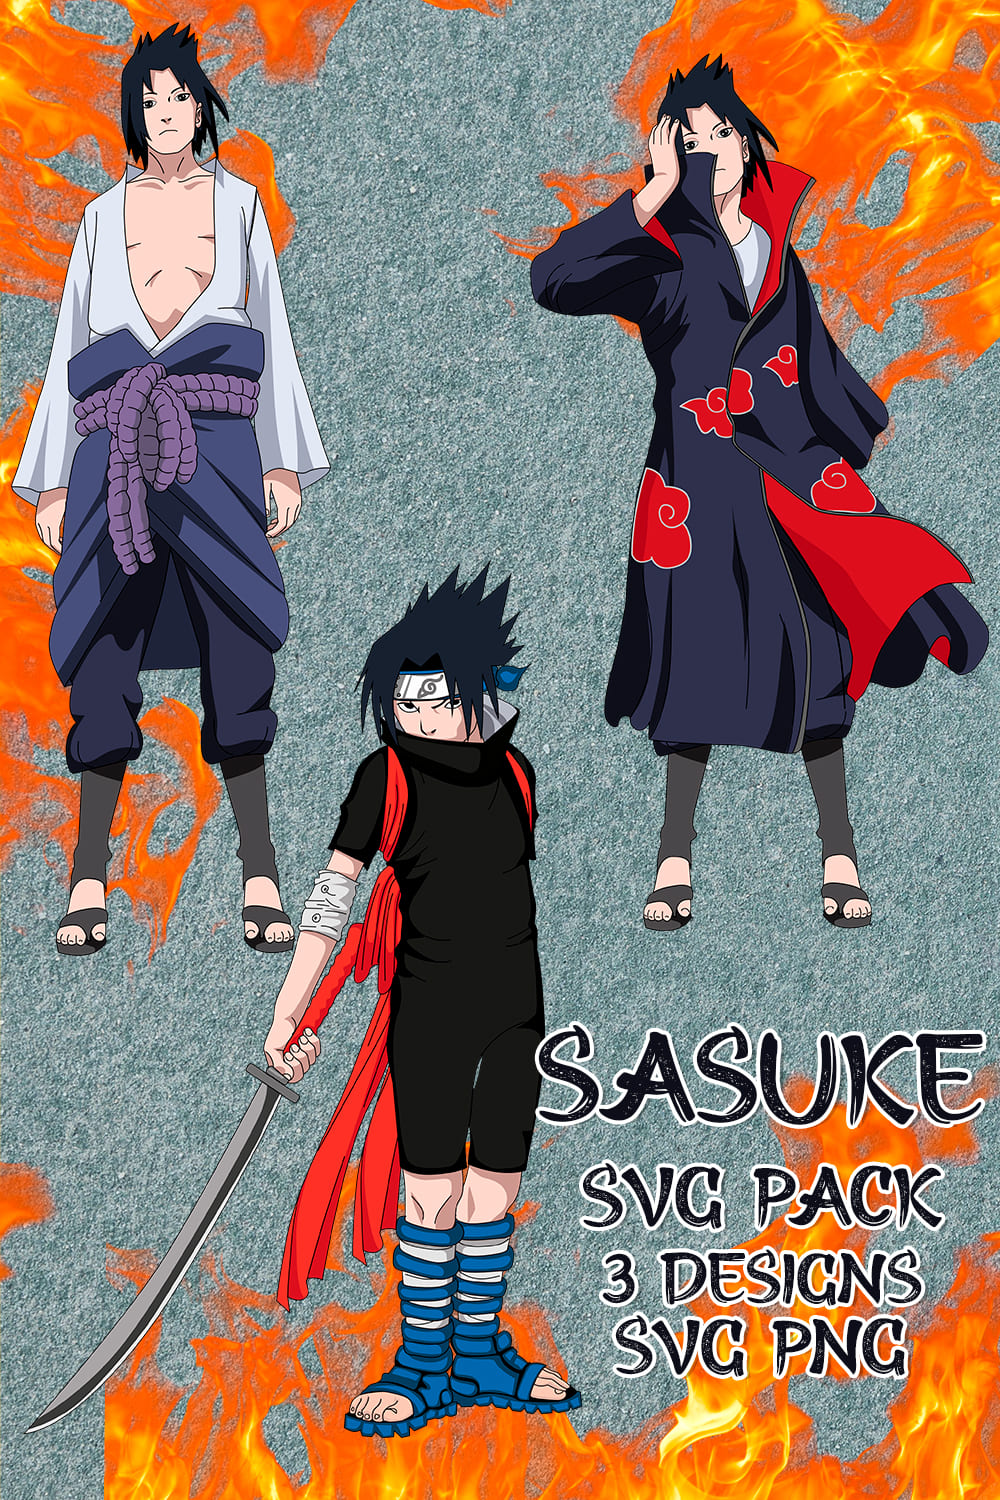 Sasuke SVG Pack 3 designs SVG, PNG.